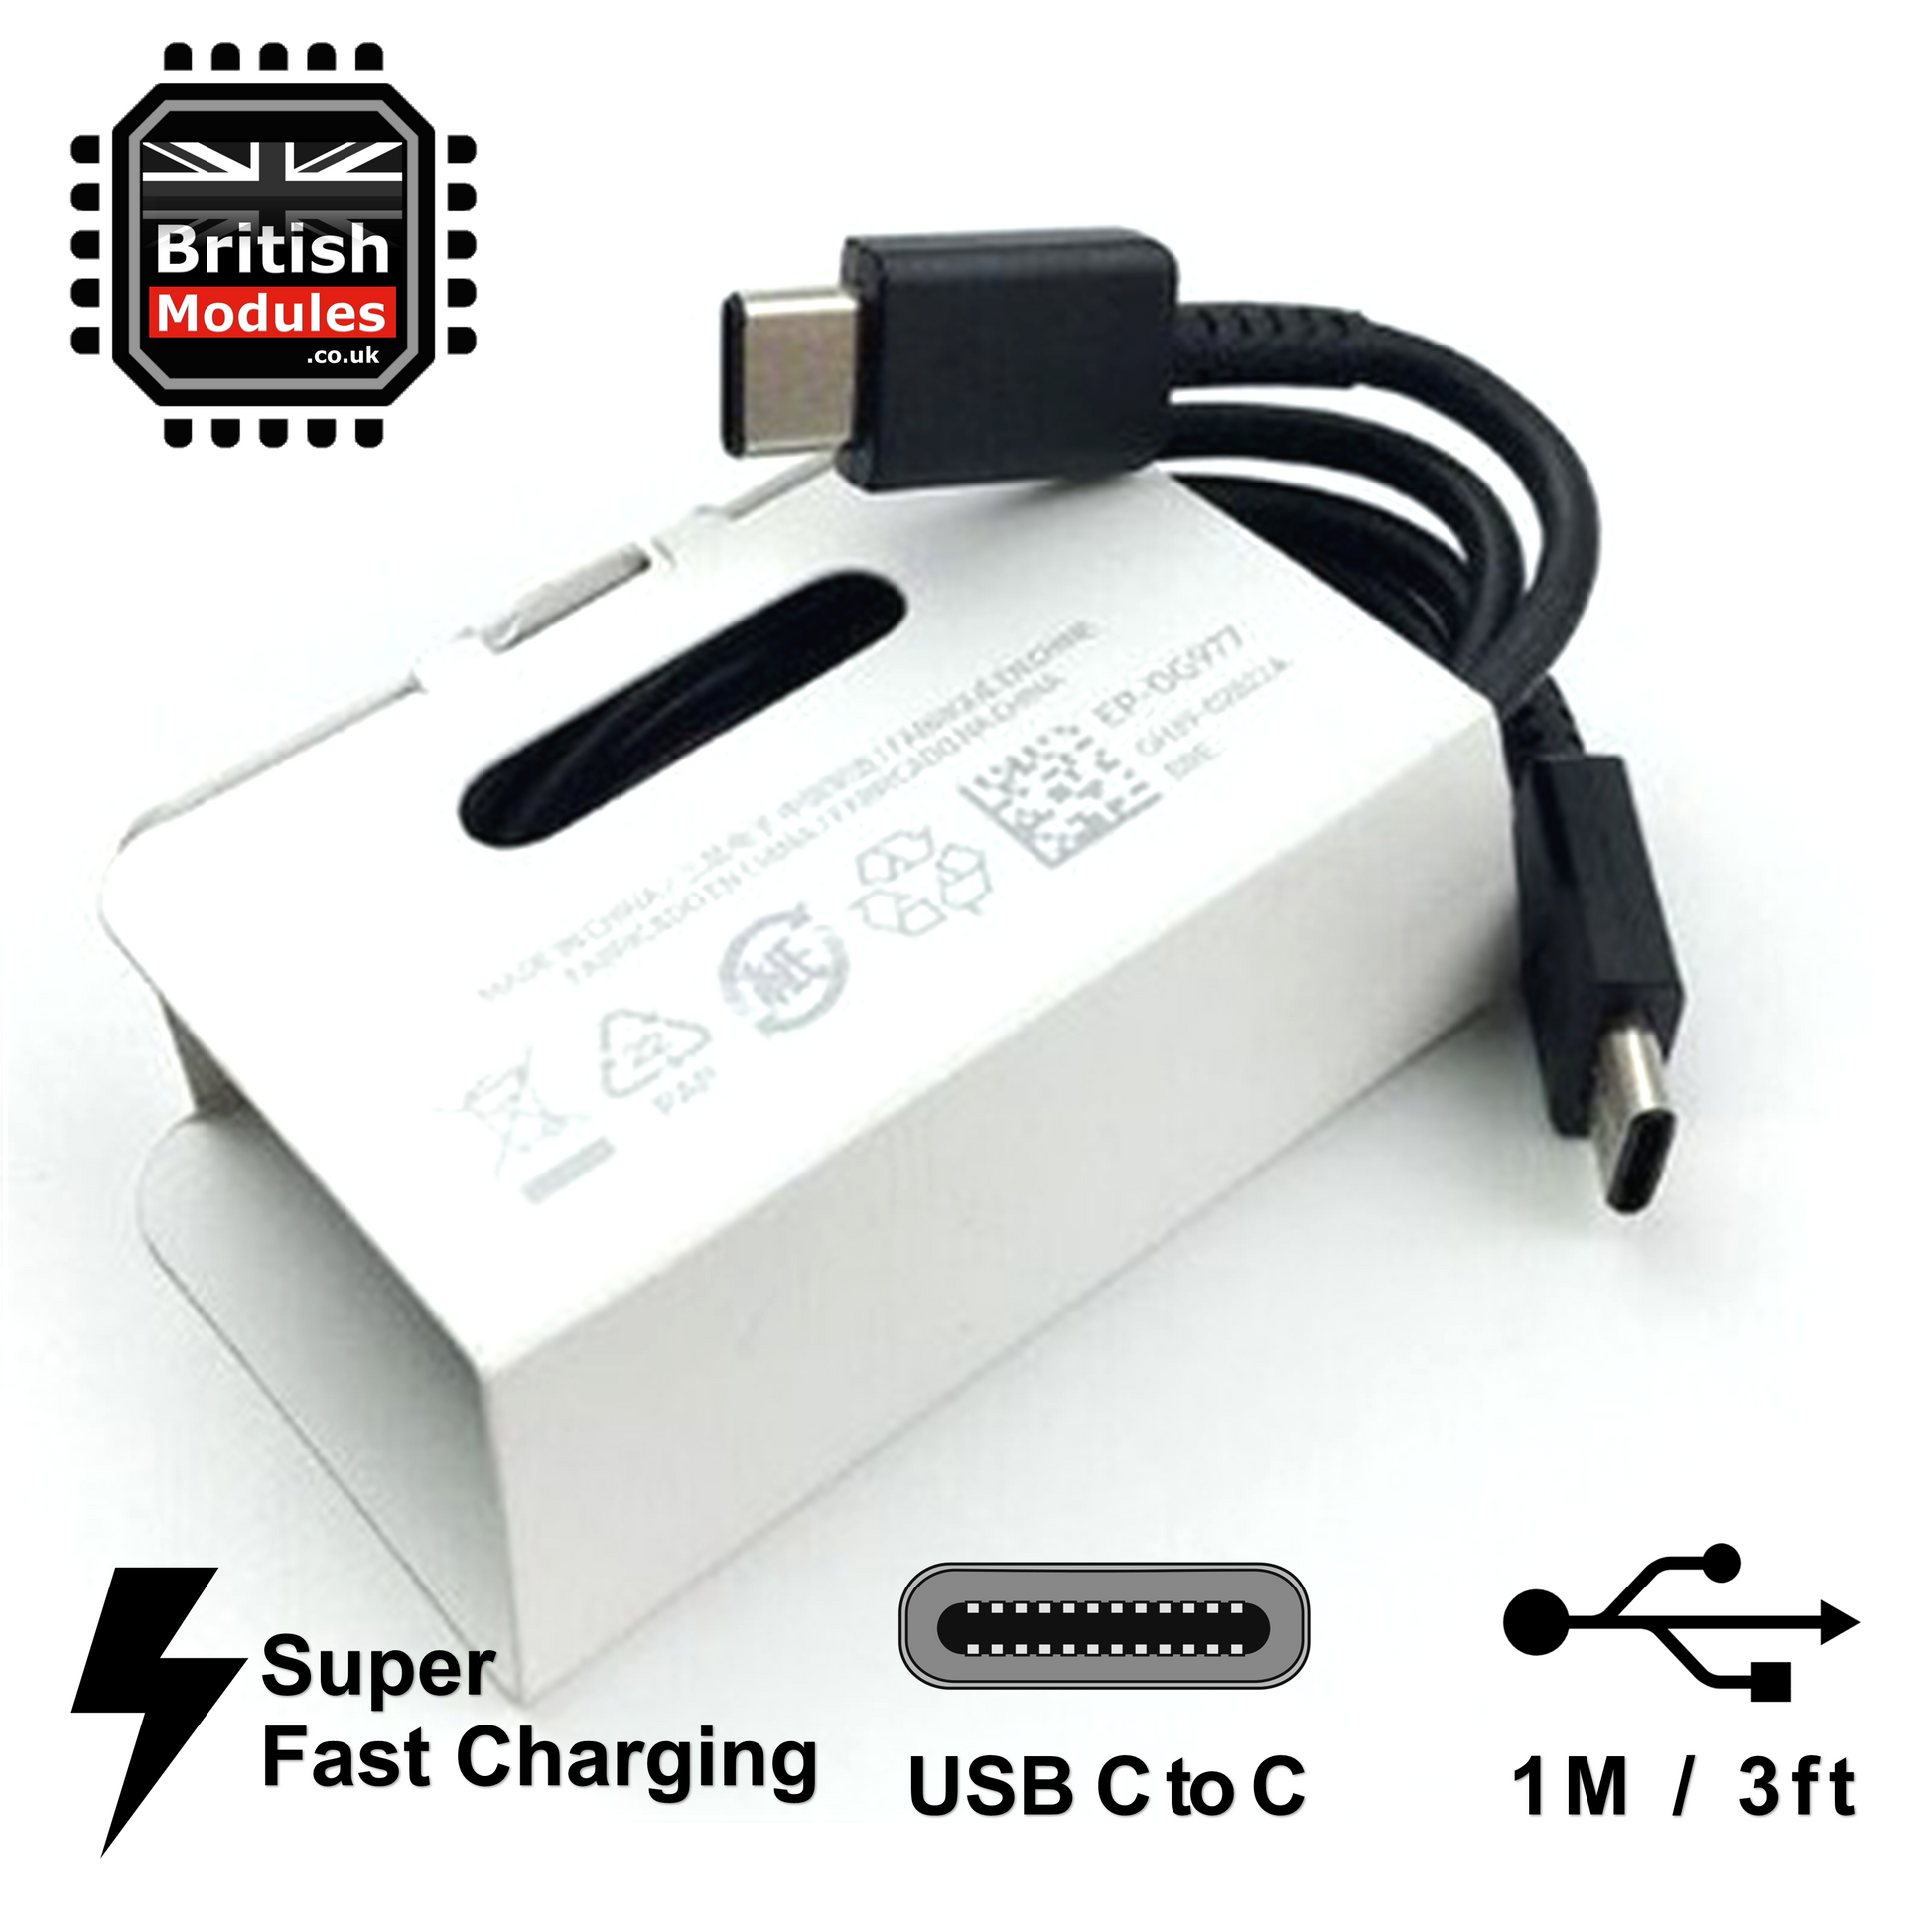 Samsung - Câble USB-C vers USB-C Charge rapide 1 mètre D'origine Samsung  EP-DG977BWE Noir - Câble antenne - Rue du Commerce